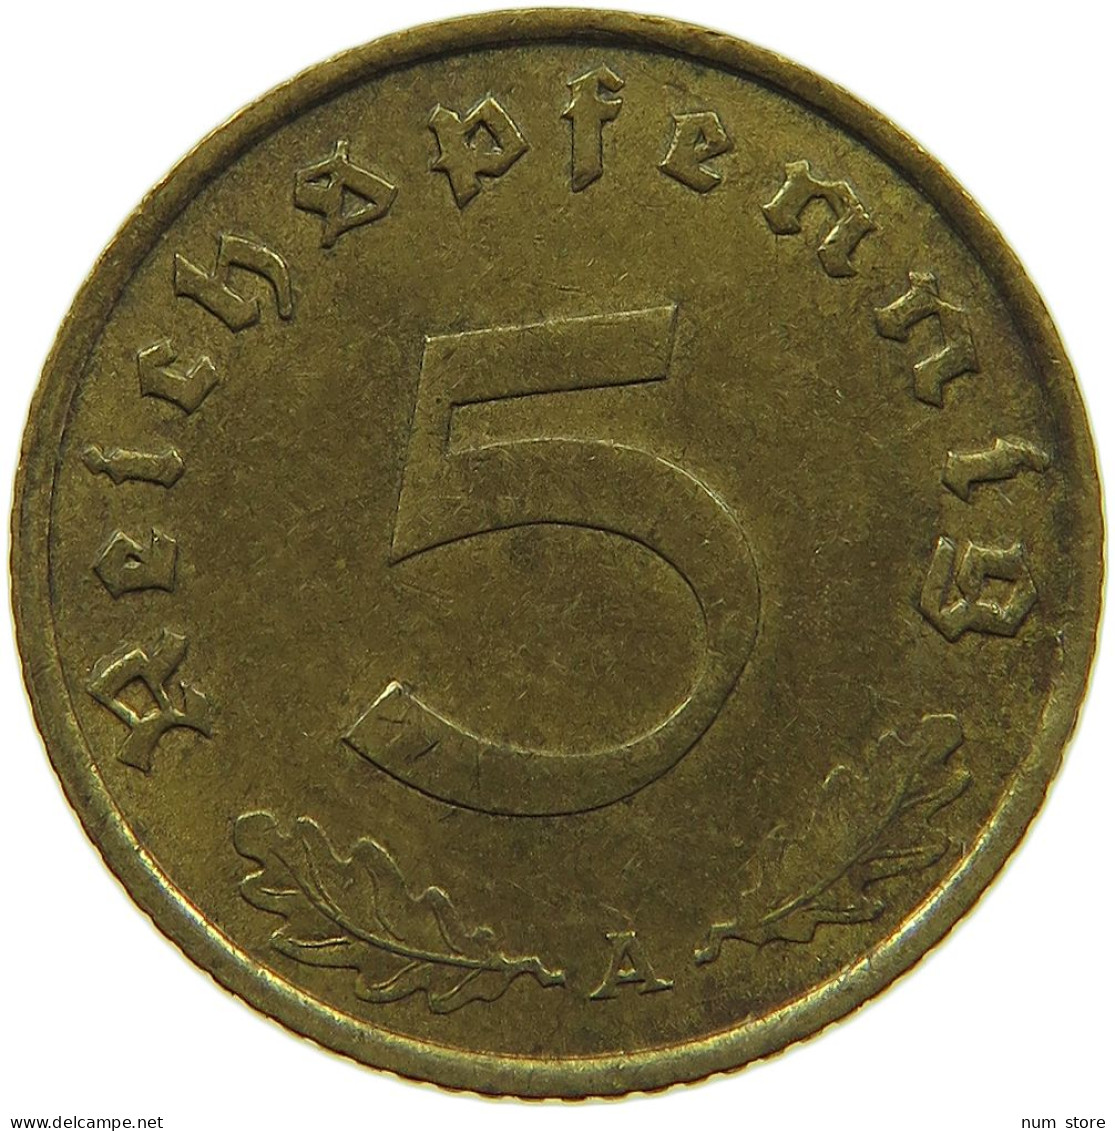 GERMANY 5 REICHSPFENNIG 1938 A #s091 0731 - 5 Reichspfennig